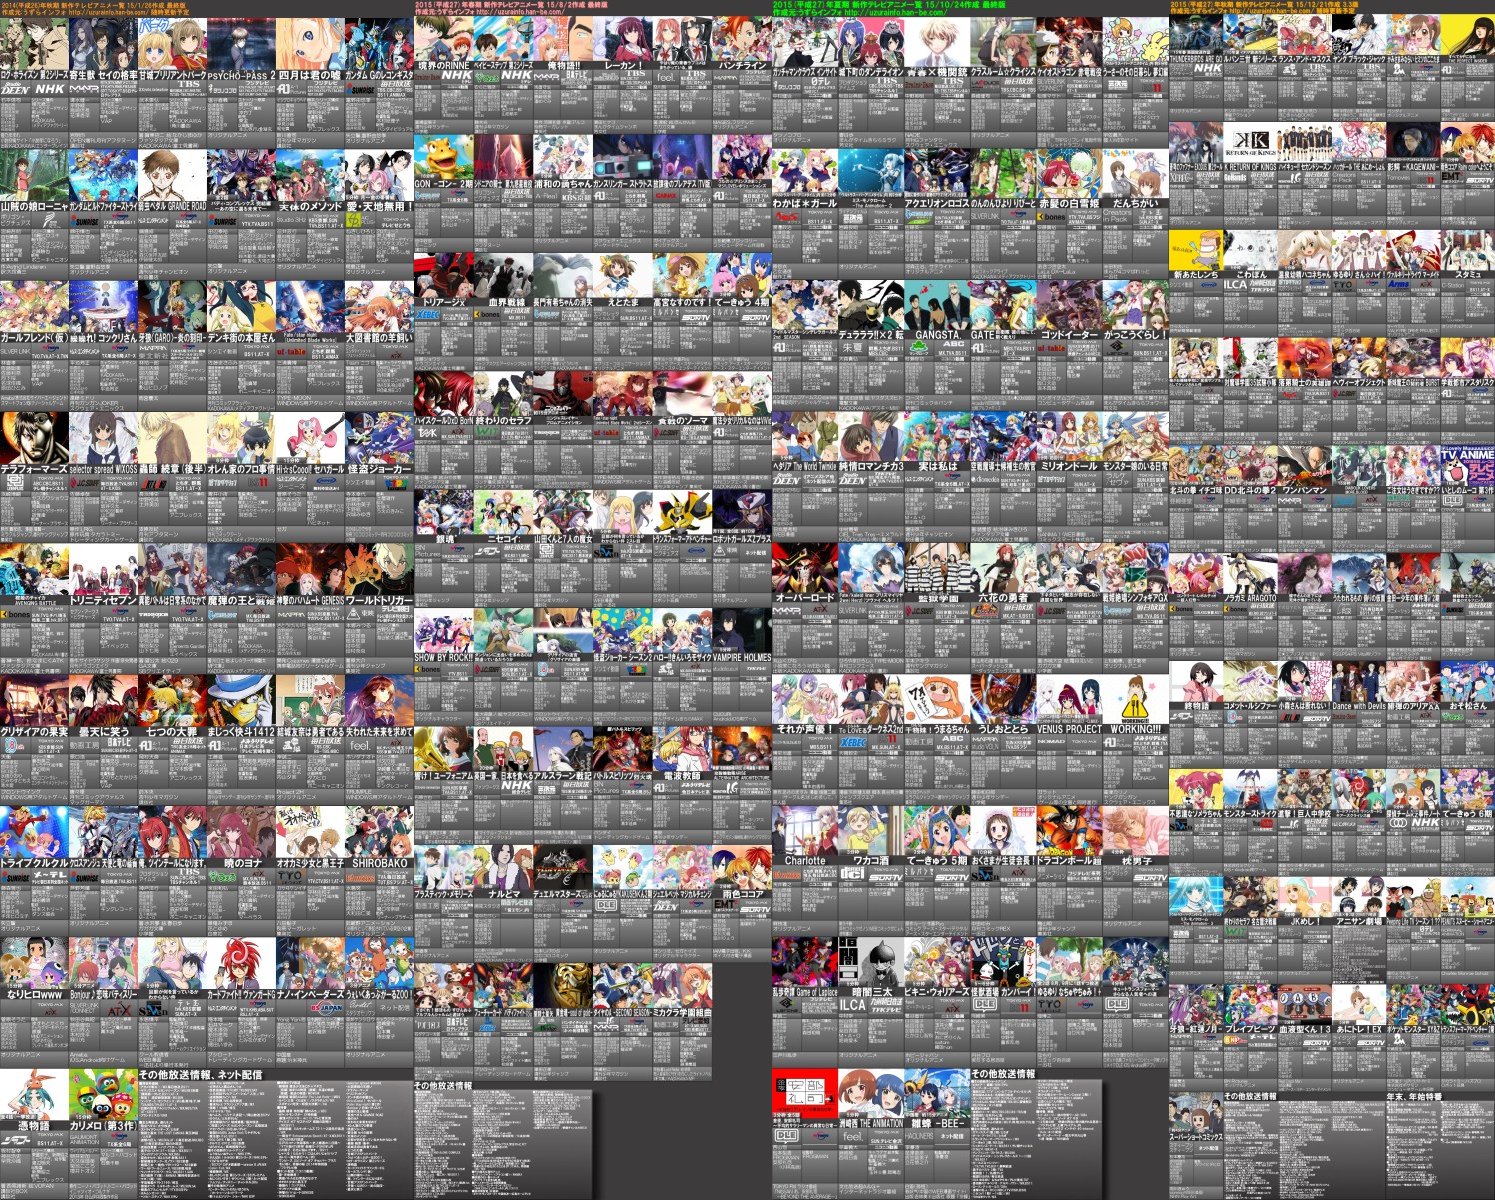 画像 2015年 2chベストアニメランキング1位から順に約150作まで決定 1位はあの大ヒット作 修正 ポンポコにゅーす ファン特化型アニメ感想サイト